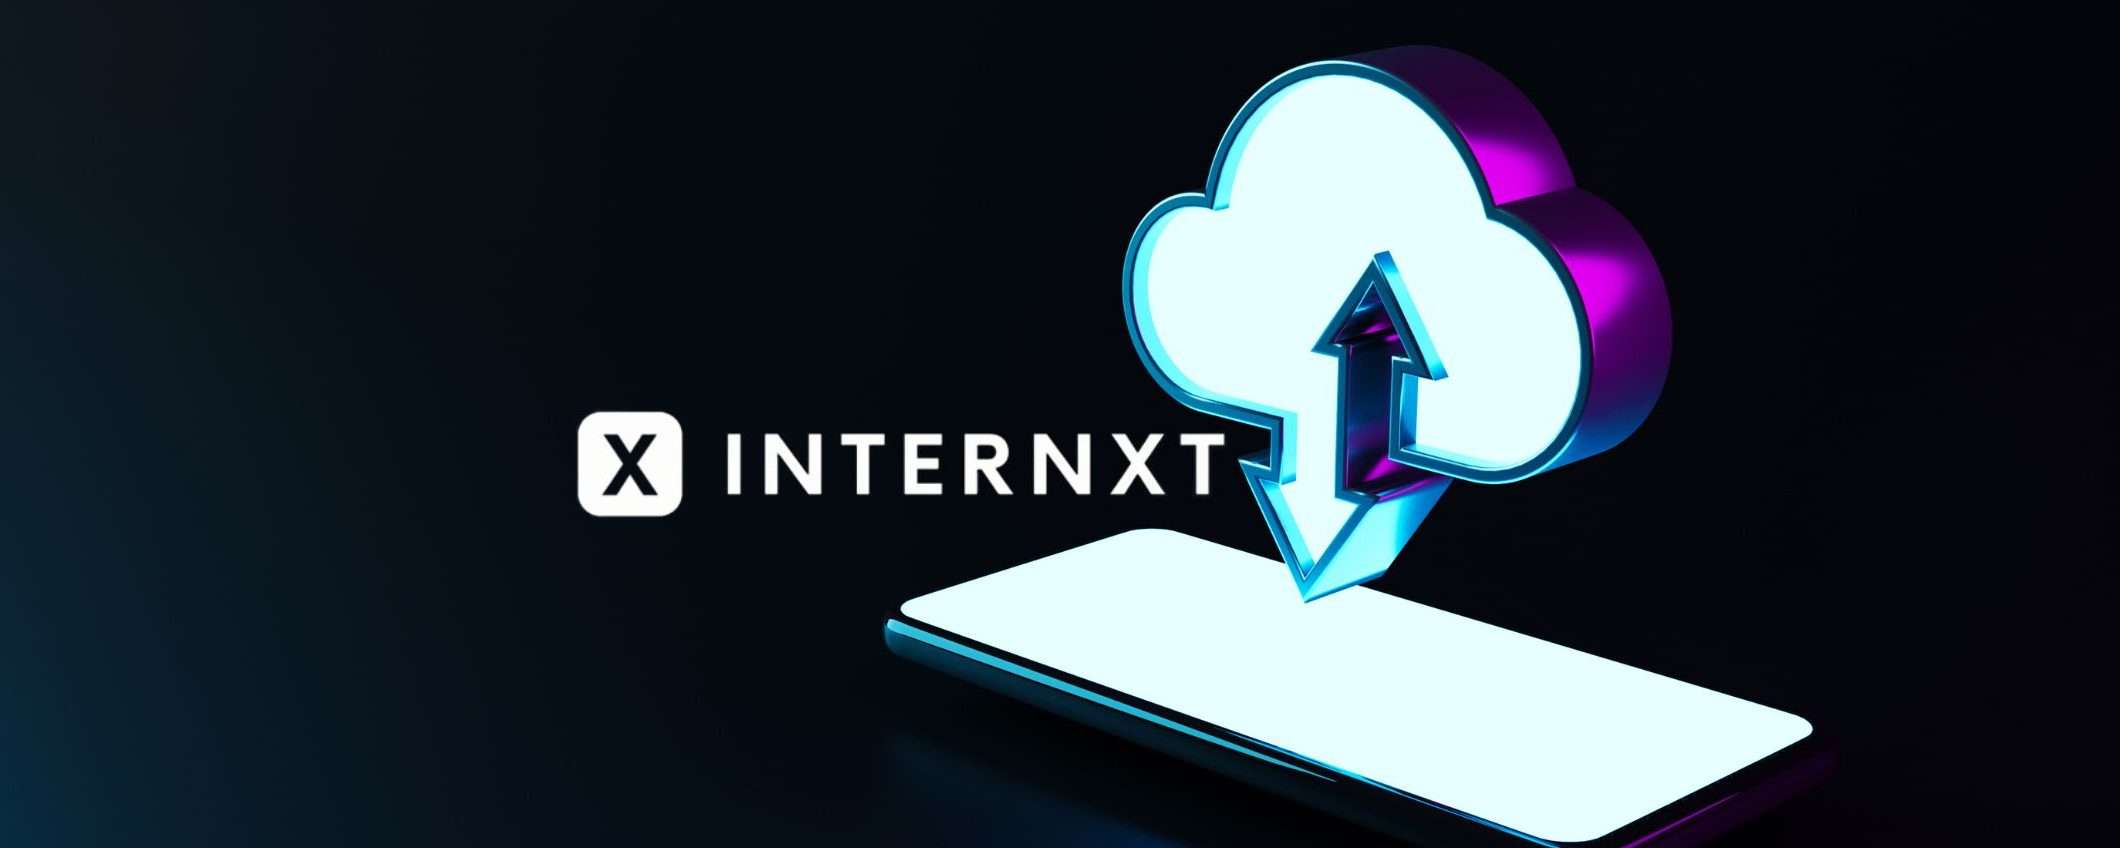 Internxt: archiviazione dati super con i piani annuali